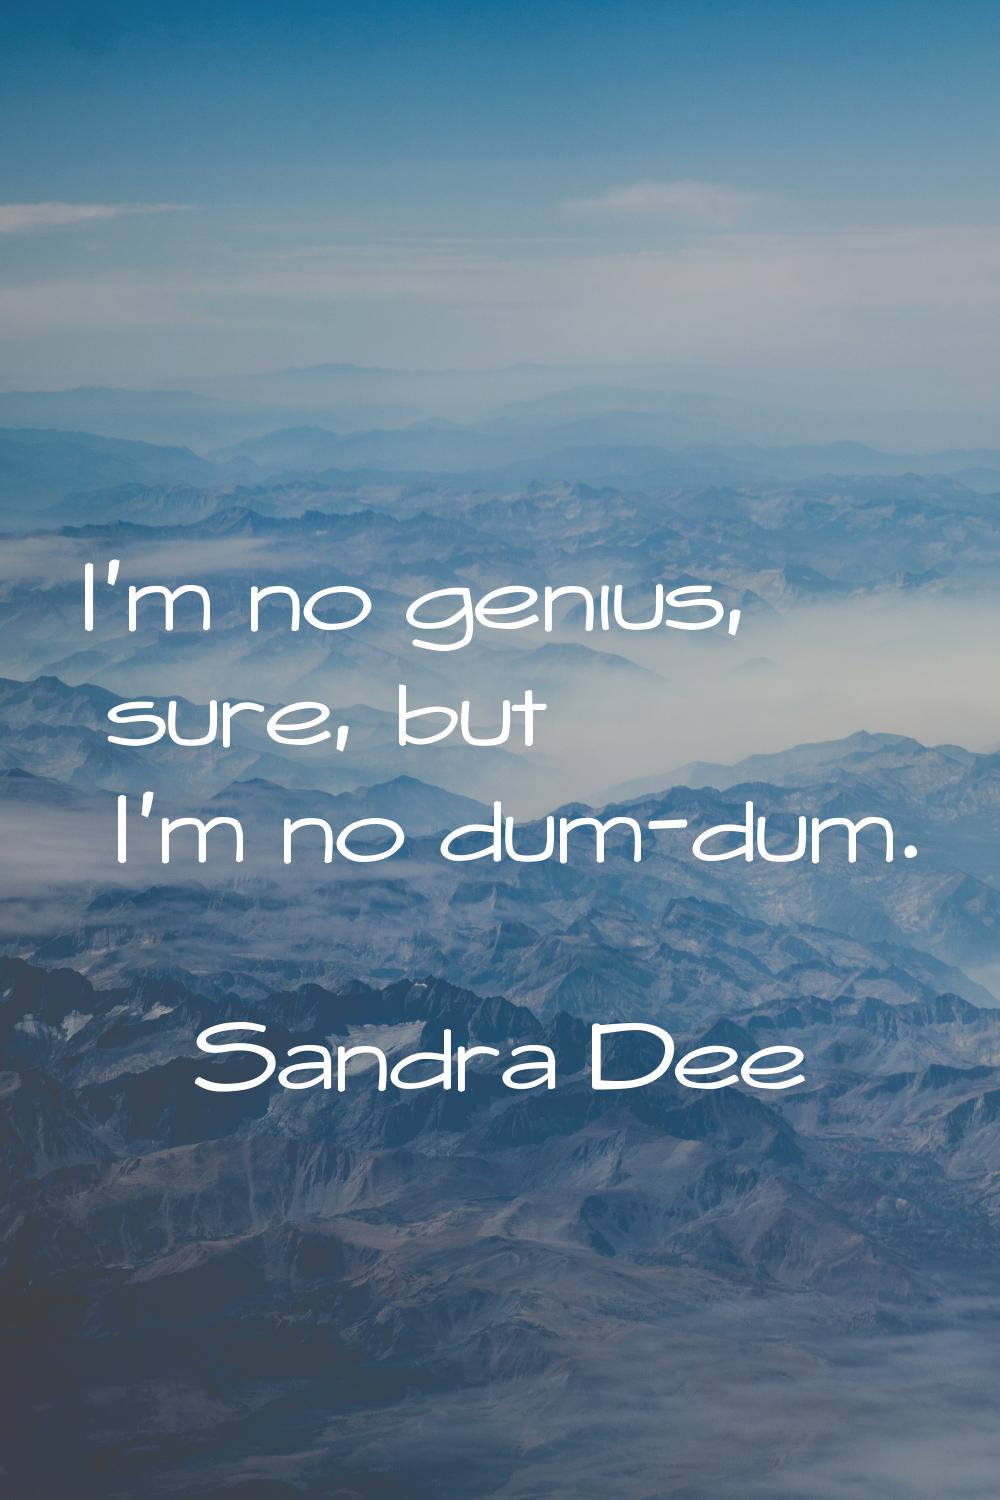 I'm no genius, sure, but I'm no dum-dum.